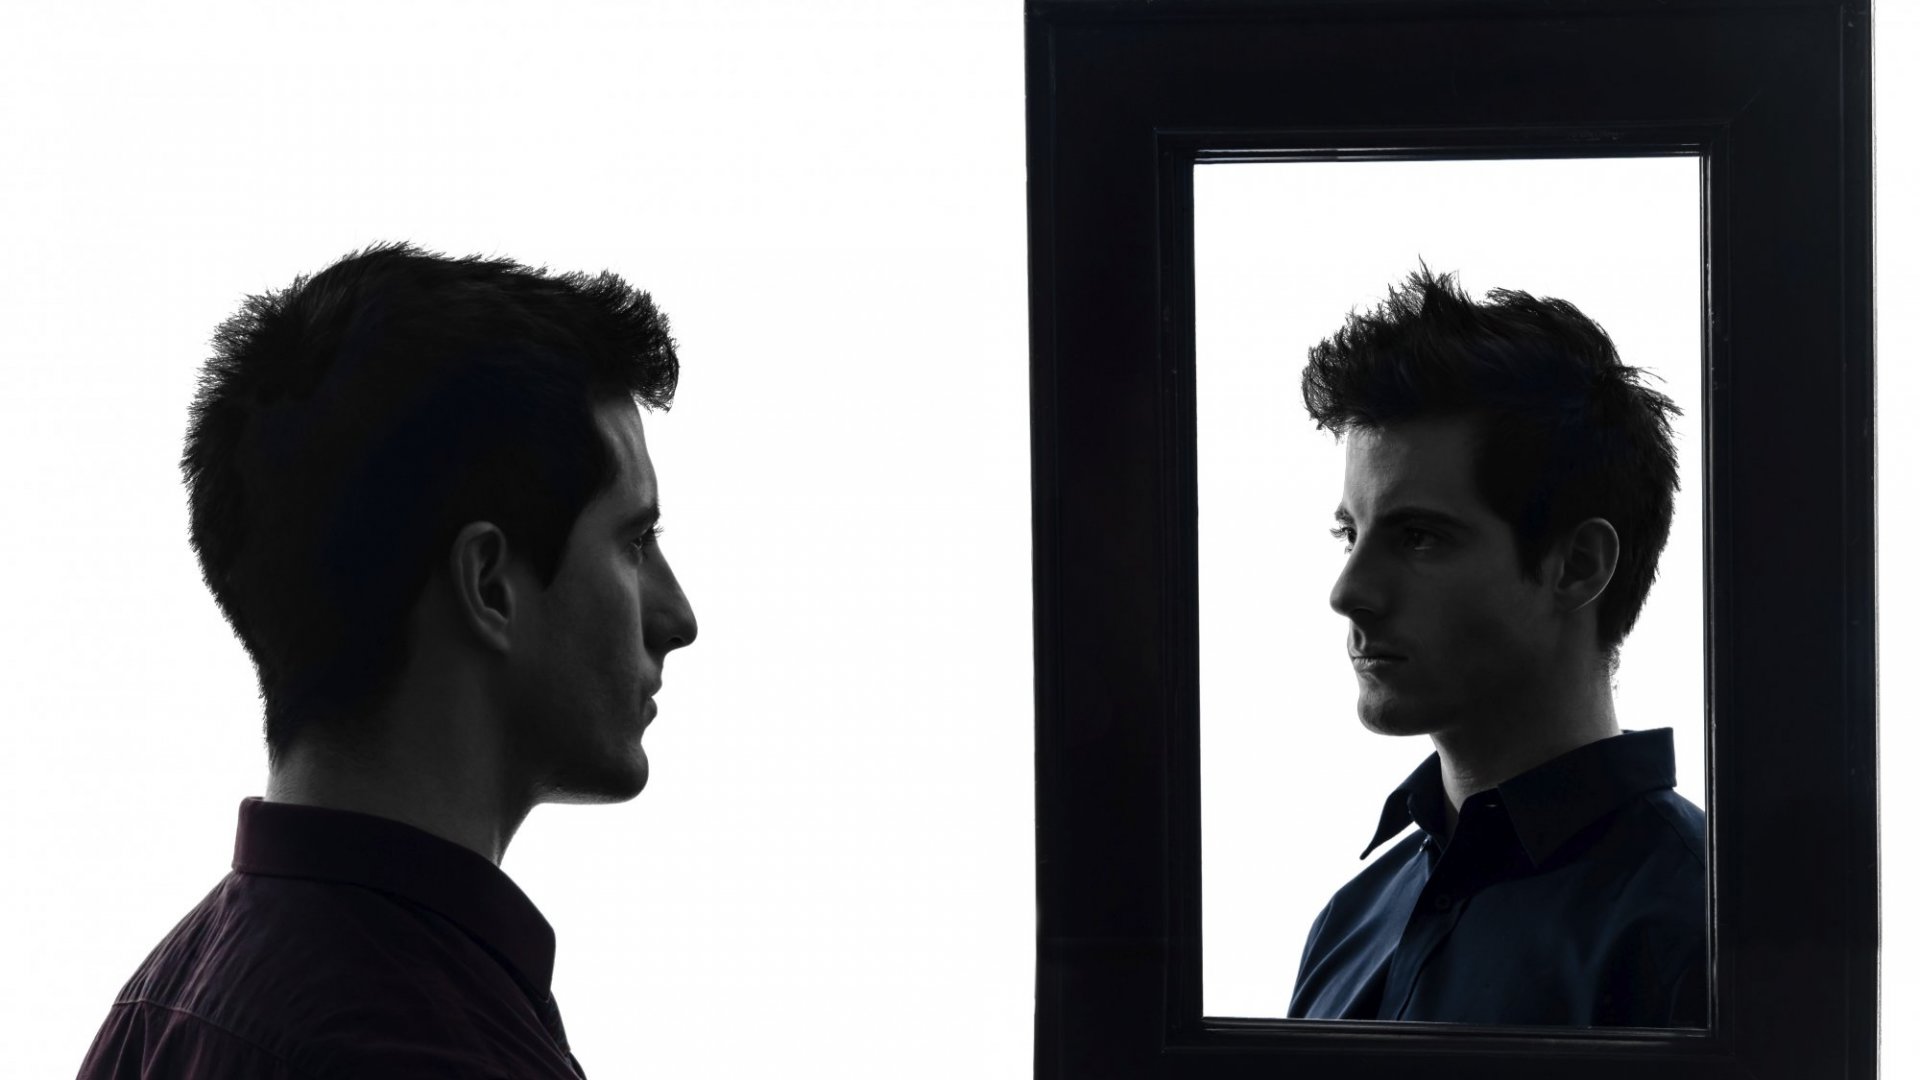 See me self. Человек смотрит в зеркало. Мужчина в зеркале. Отражение мужчины. Парень перед зеркалом арт.